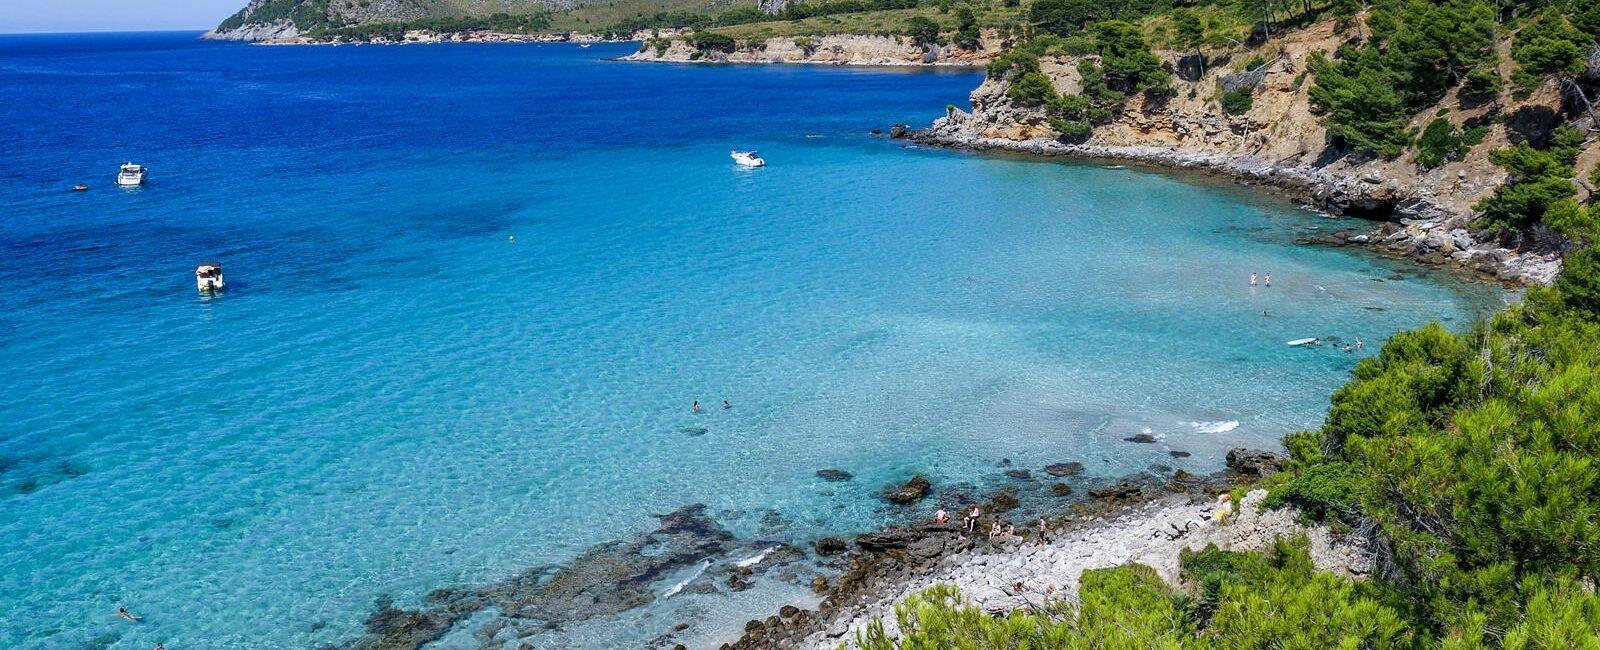 Wild beaches in Majorca – Cala na clara.